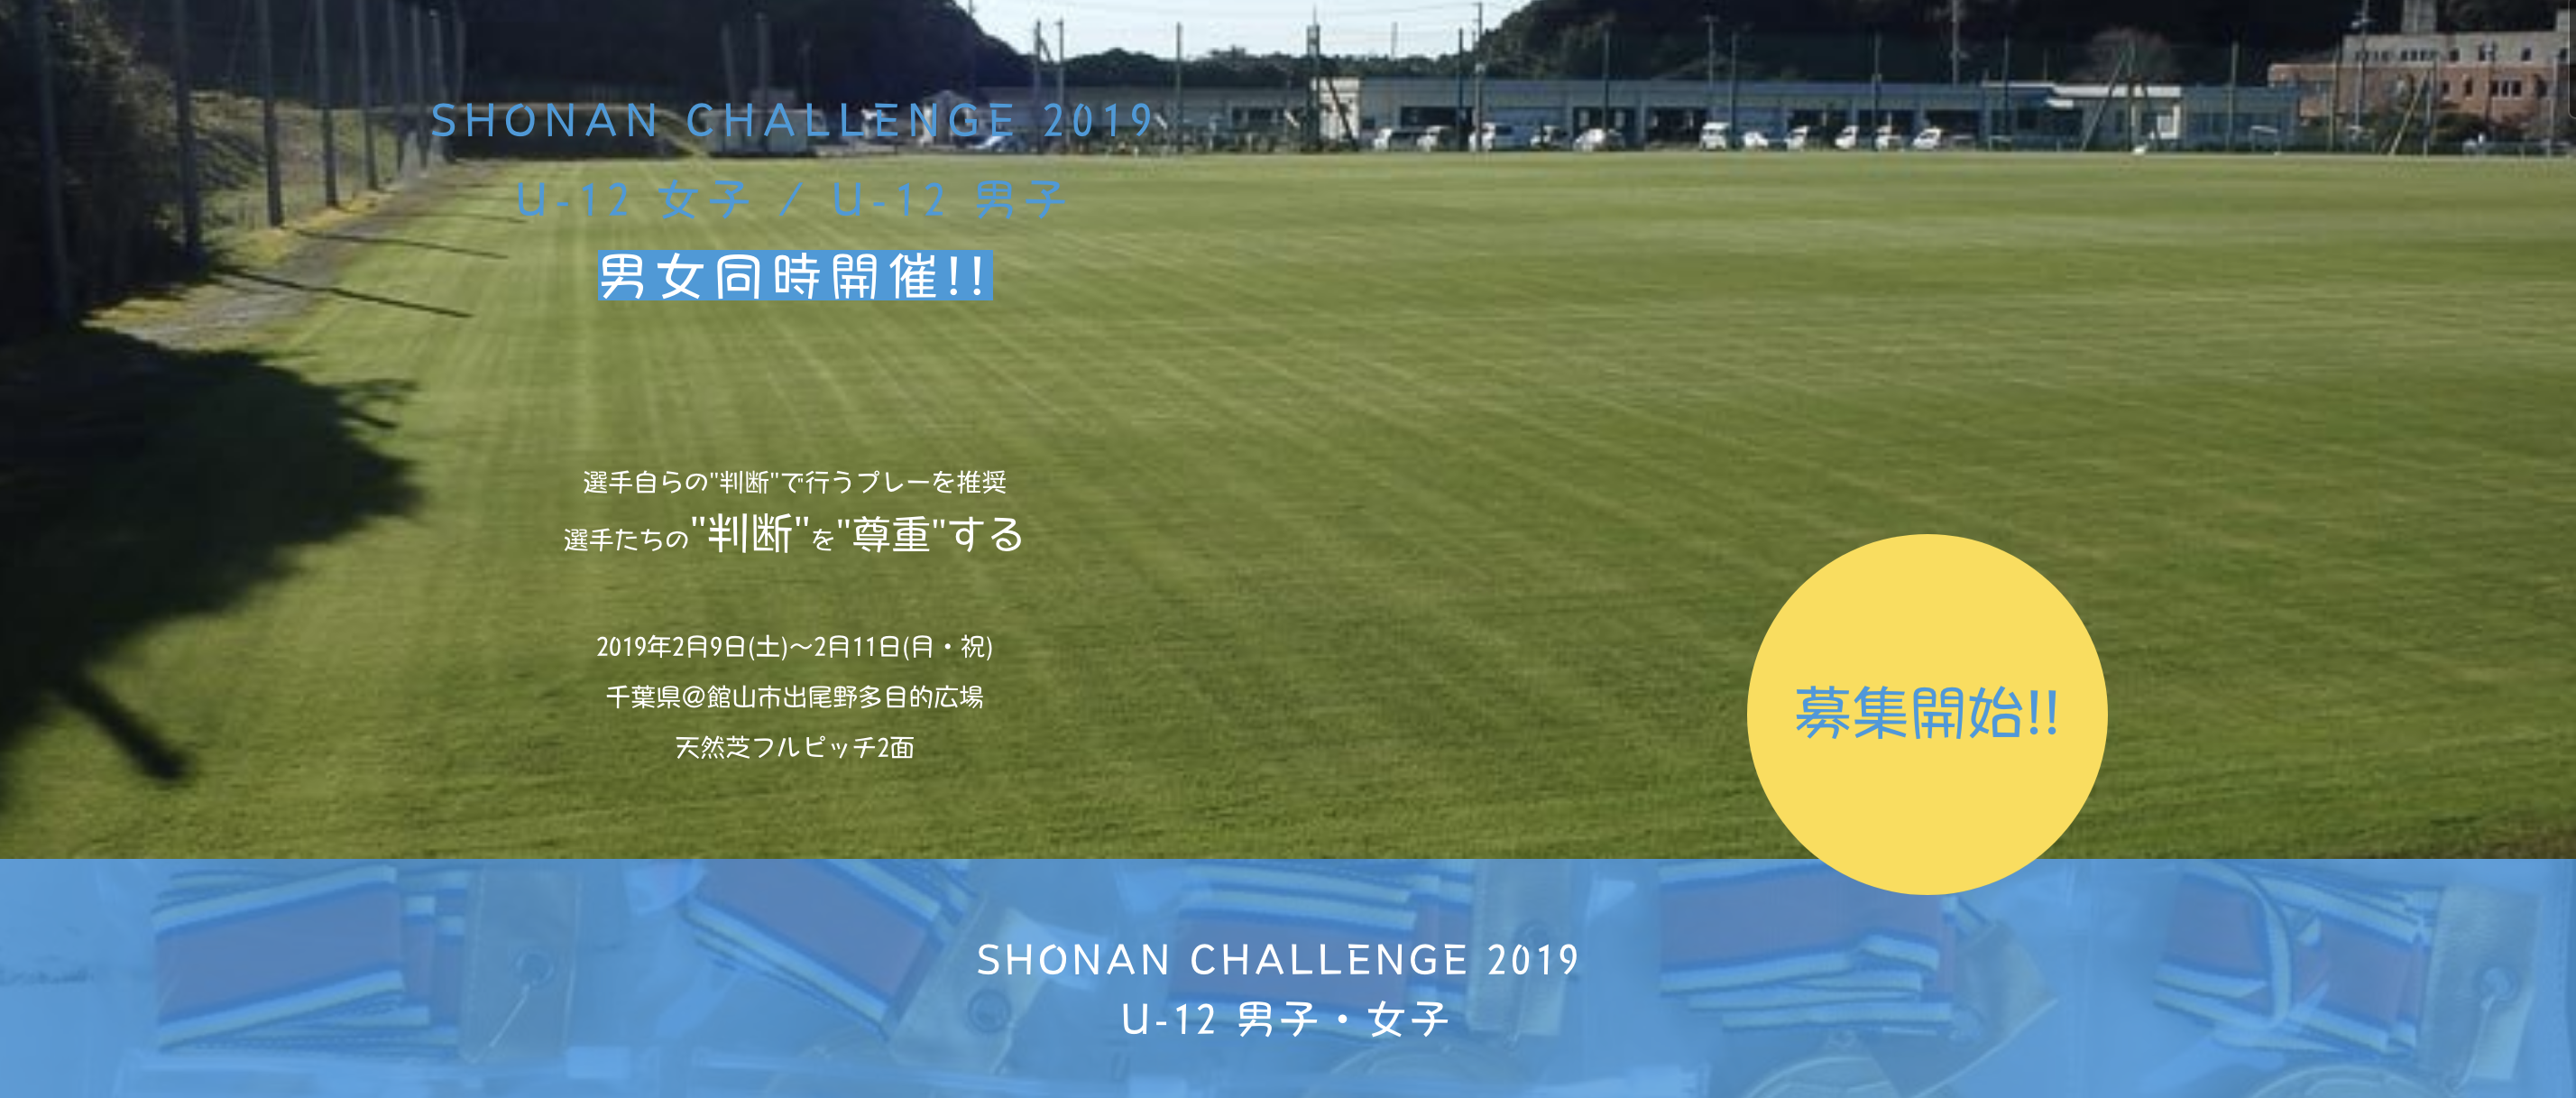 SHONAN CHALLENGE 2019  U-12 女子 / U-12 男子 男女同時開催!! 2/9〜2/11 千葉県館山市開催